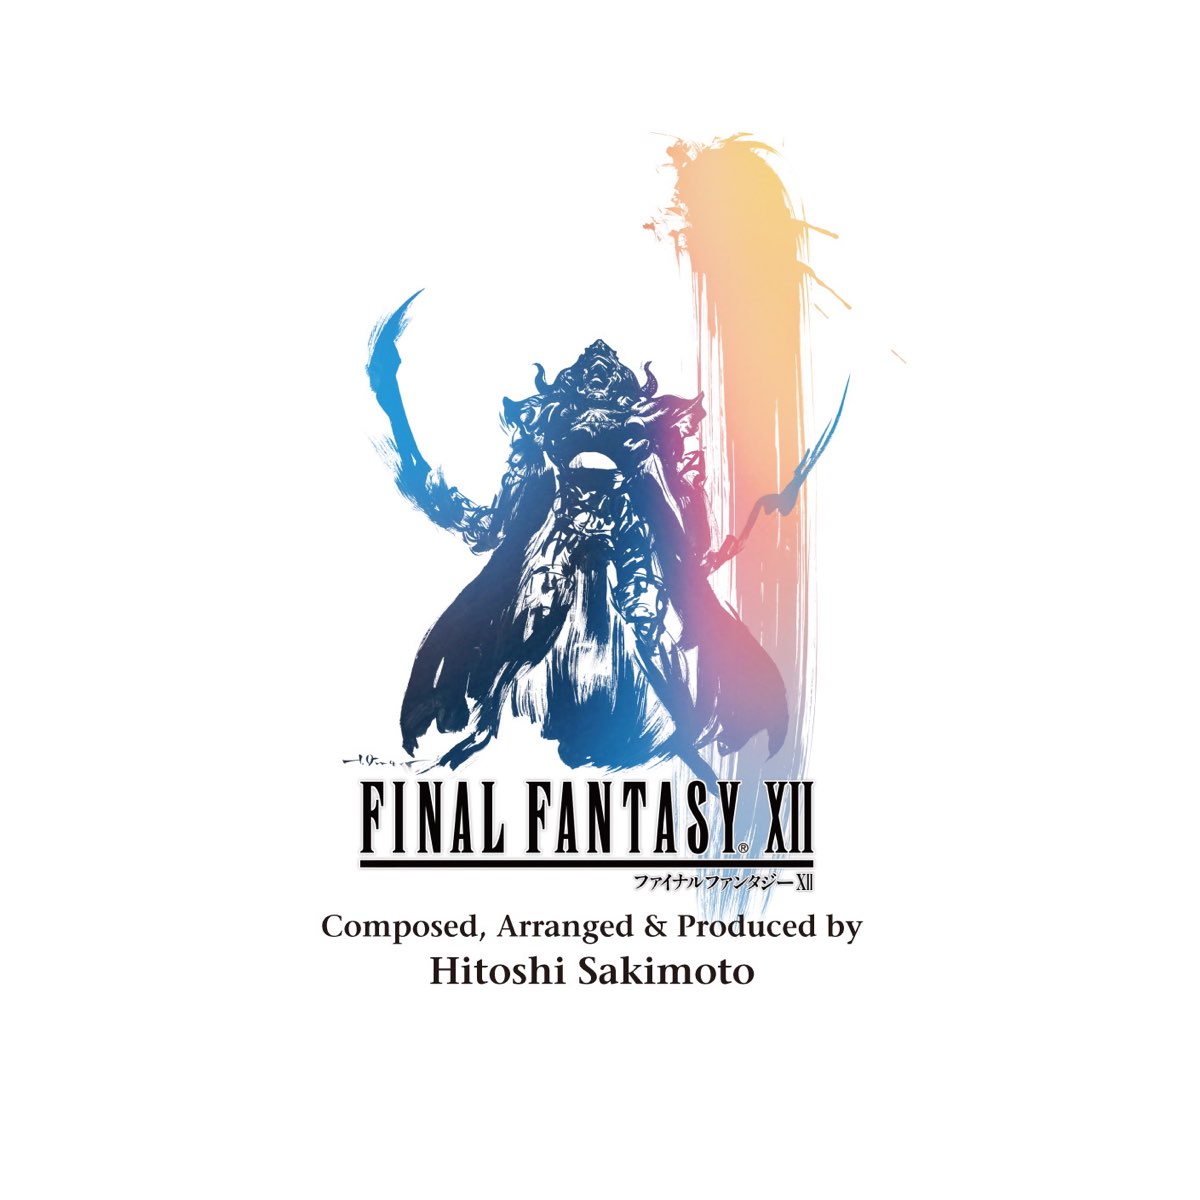 崎元仁の Final Fantasy Xii Original Soundtrack をapple Musicで